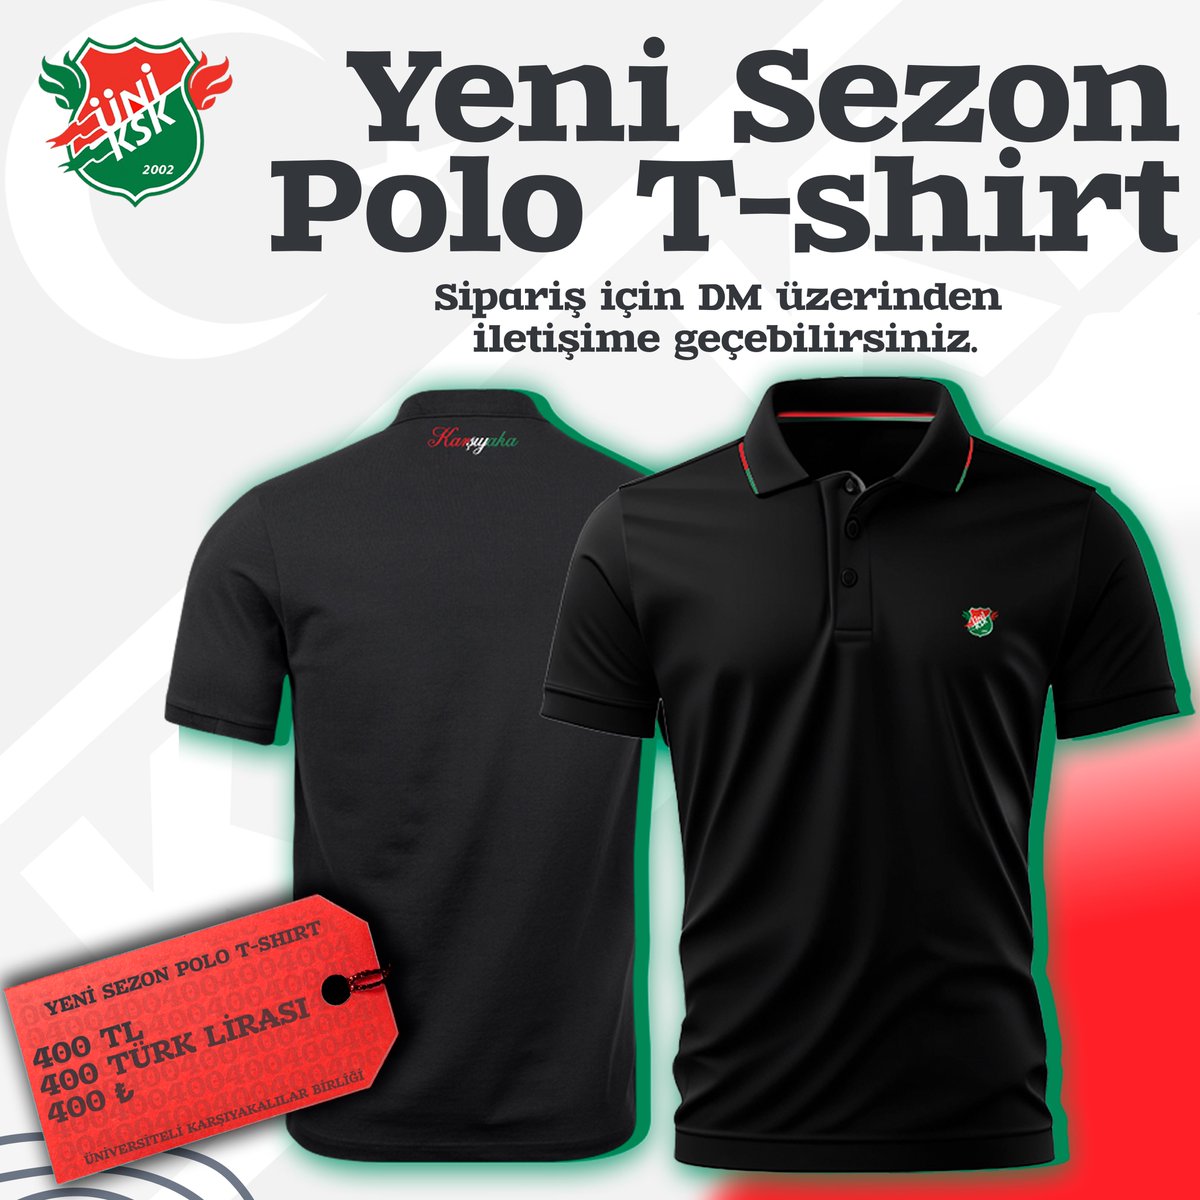 🟢Yeni Sezon Polo T-shirt!🔴 Sipariş için DM üzerinden bizimle iletişime geçebilirsiniz! 📩